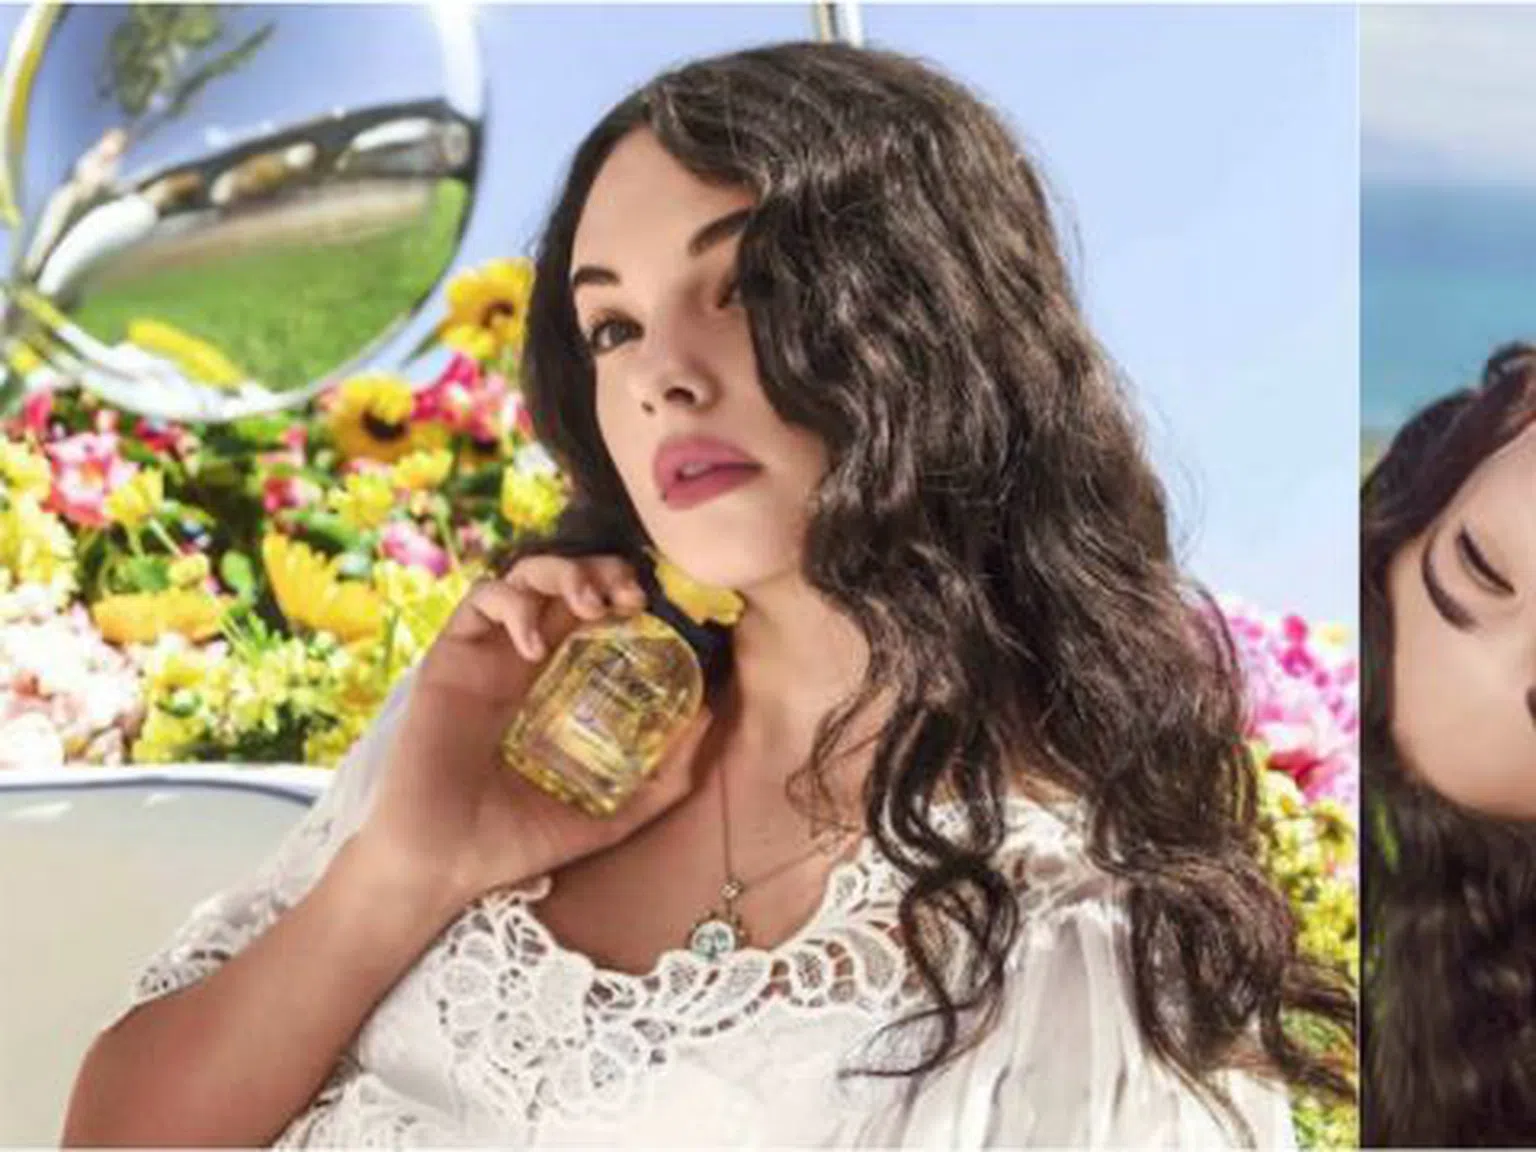 15-годишната дъщеря на Венсан Касел и Моника Белучи стана лице на Dolce & Gabbana